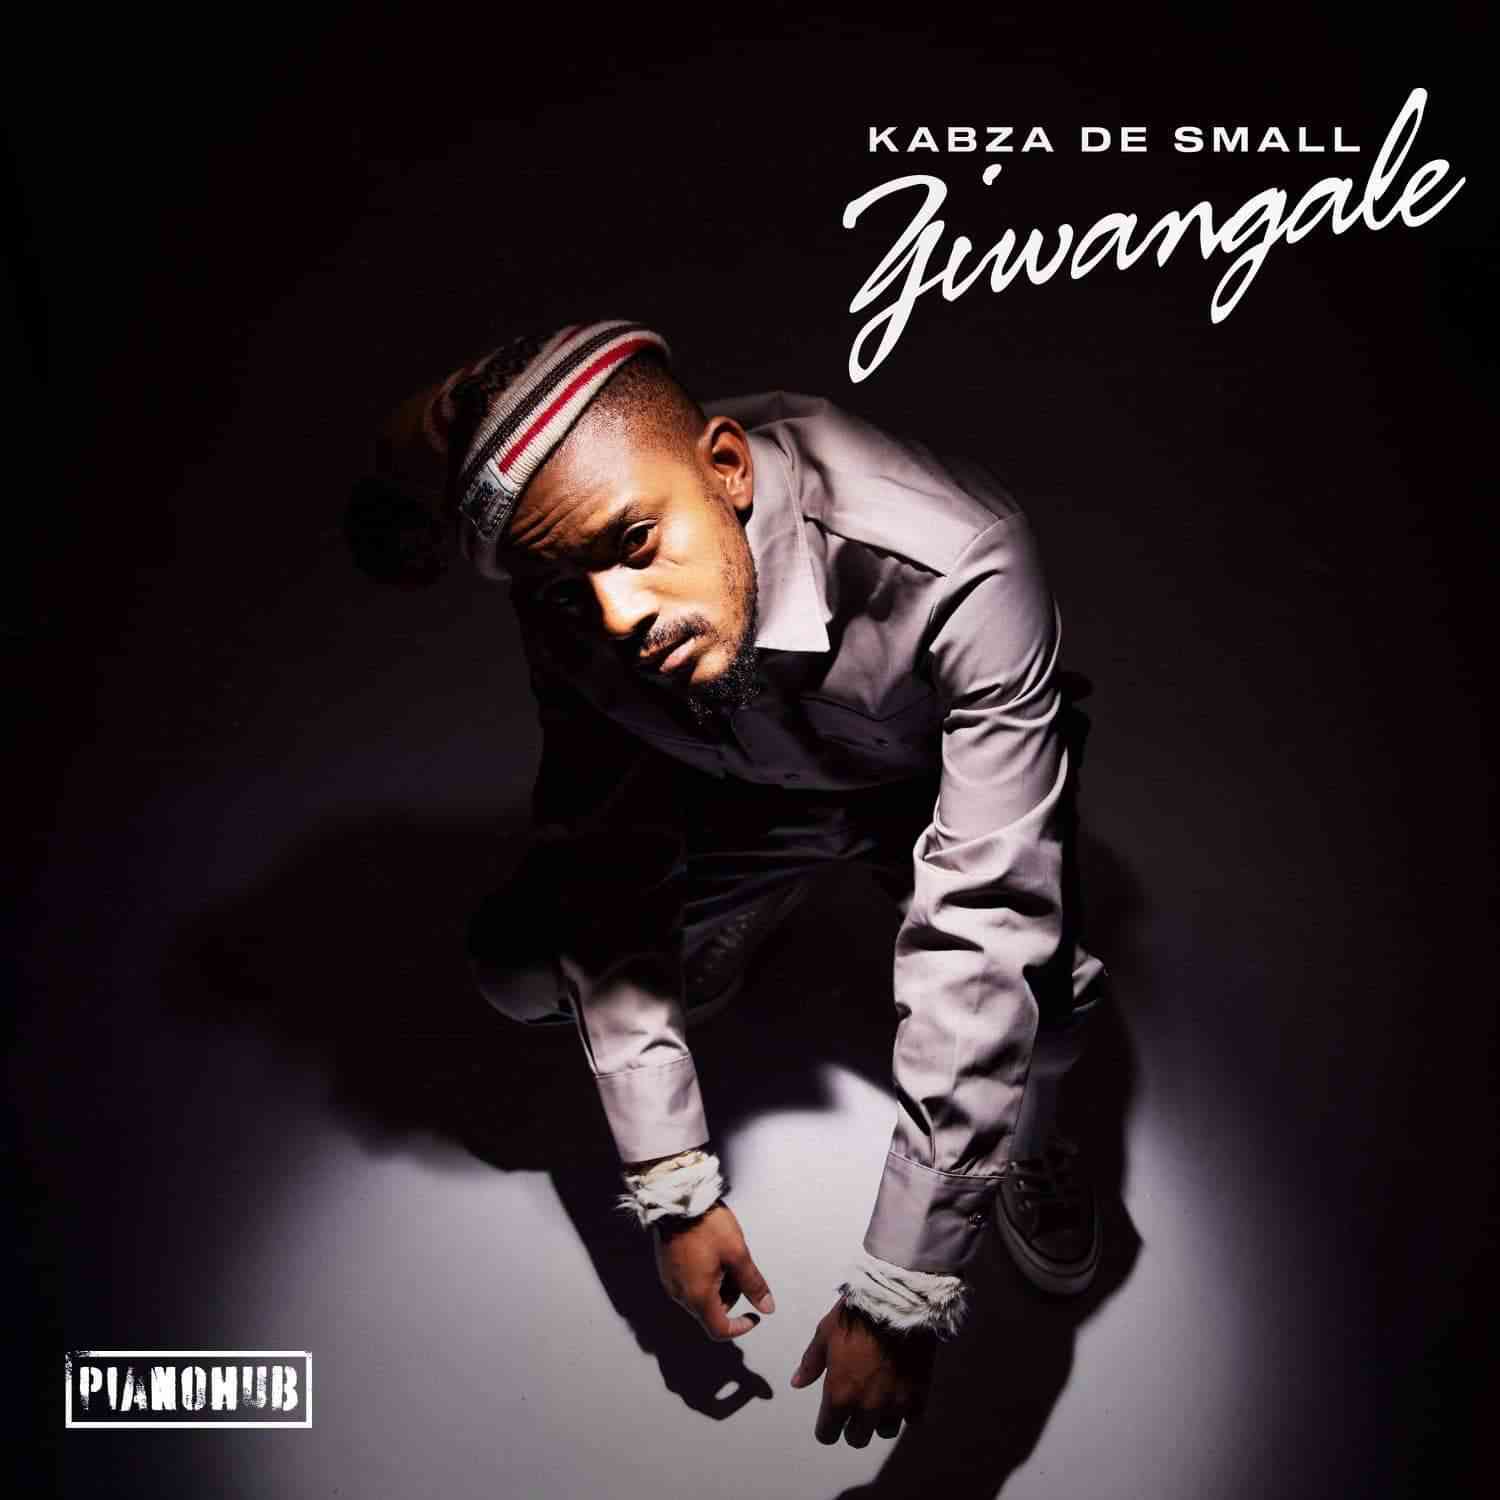 Kabza De Small Ziwa Ngale ft. DJ Tira, Young Stunna, Dladla Mshunqisi, Felo Le Tee, Beast RSA & Dj Exit SA 